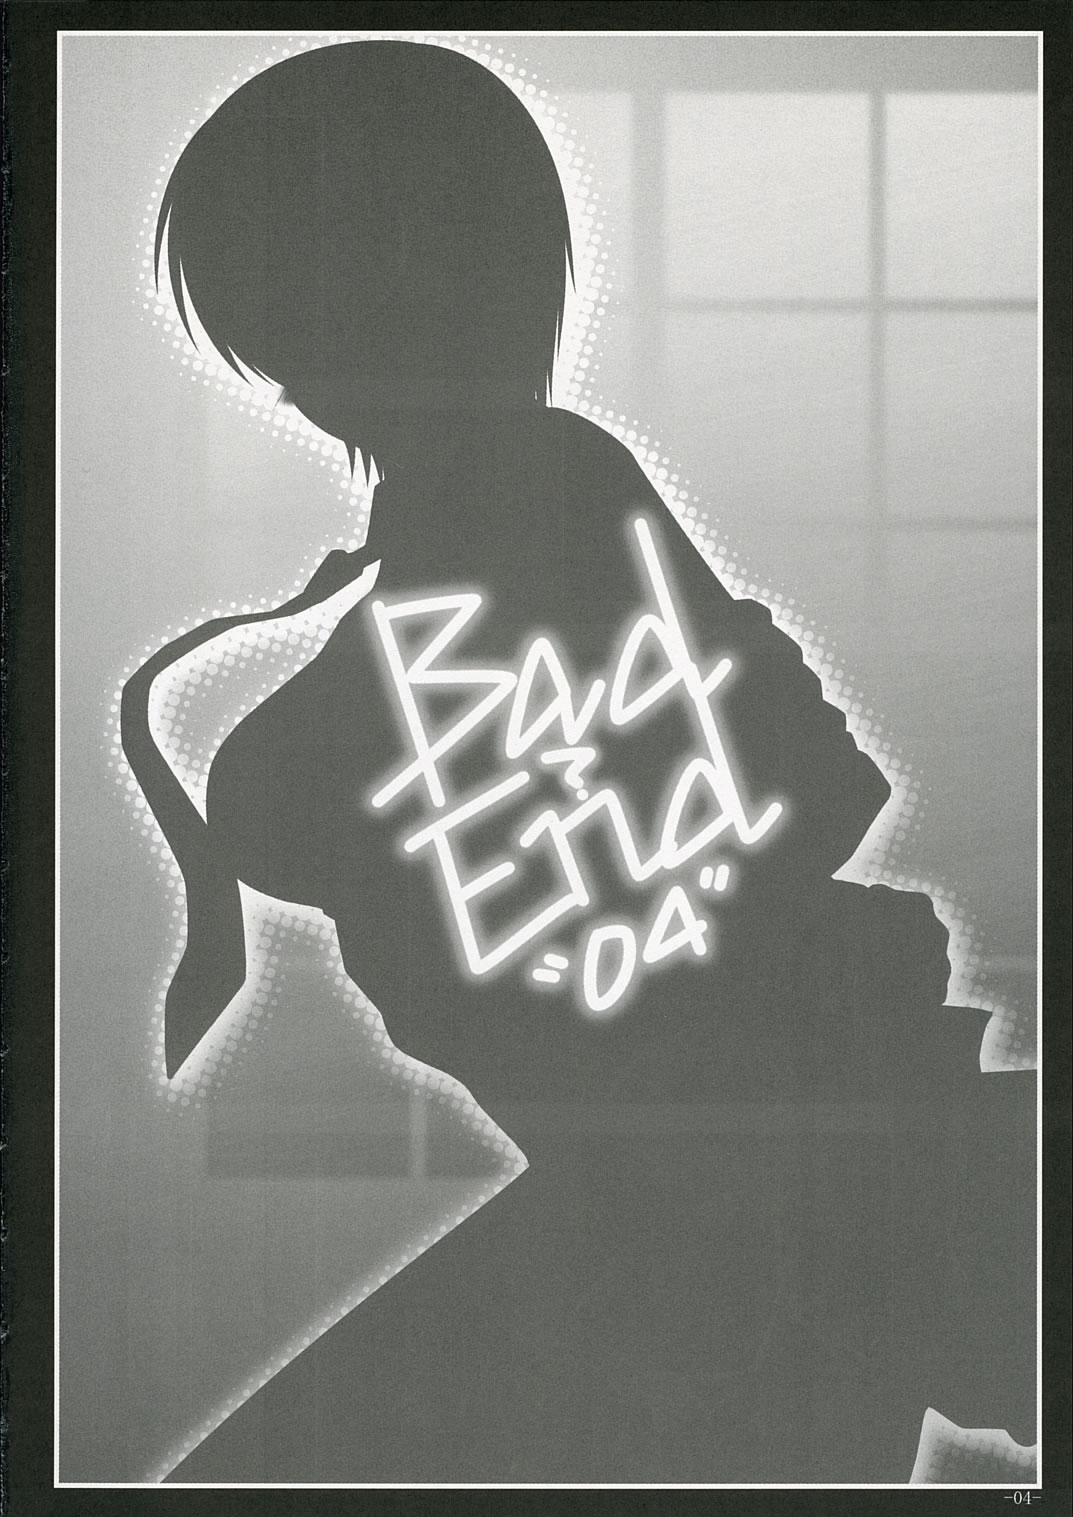 (コミコミ10) [童話建設 (野村輝弥)] Bad?End"04" (Fate/hollow ataraxia)